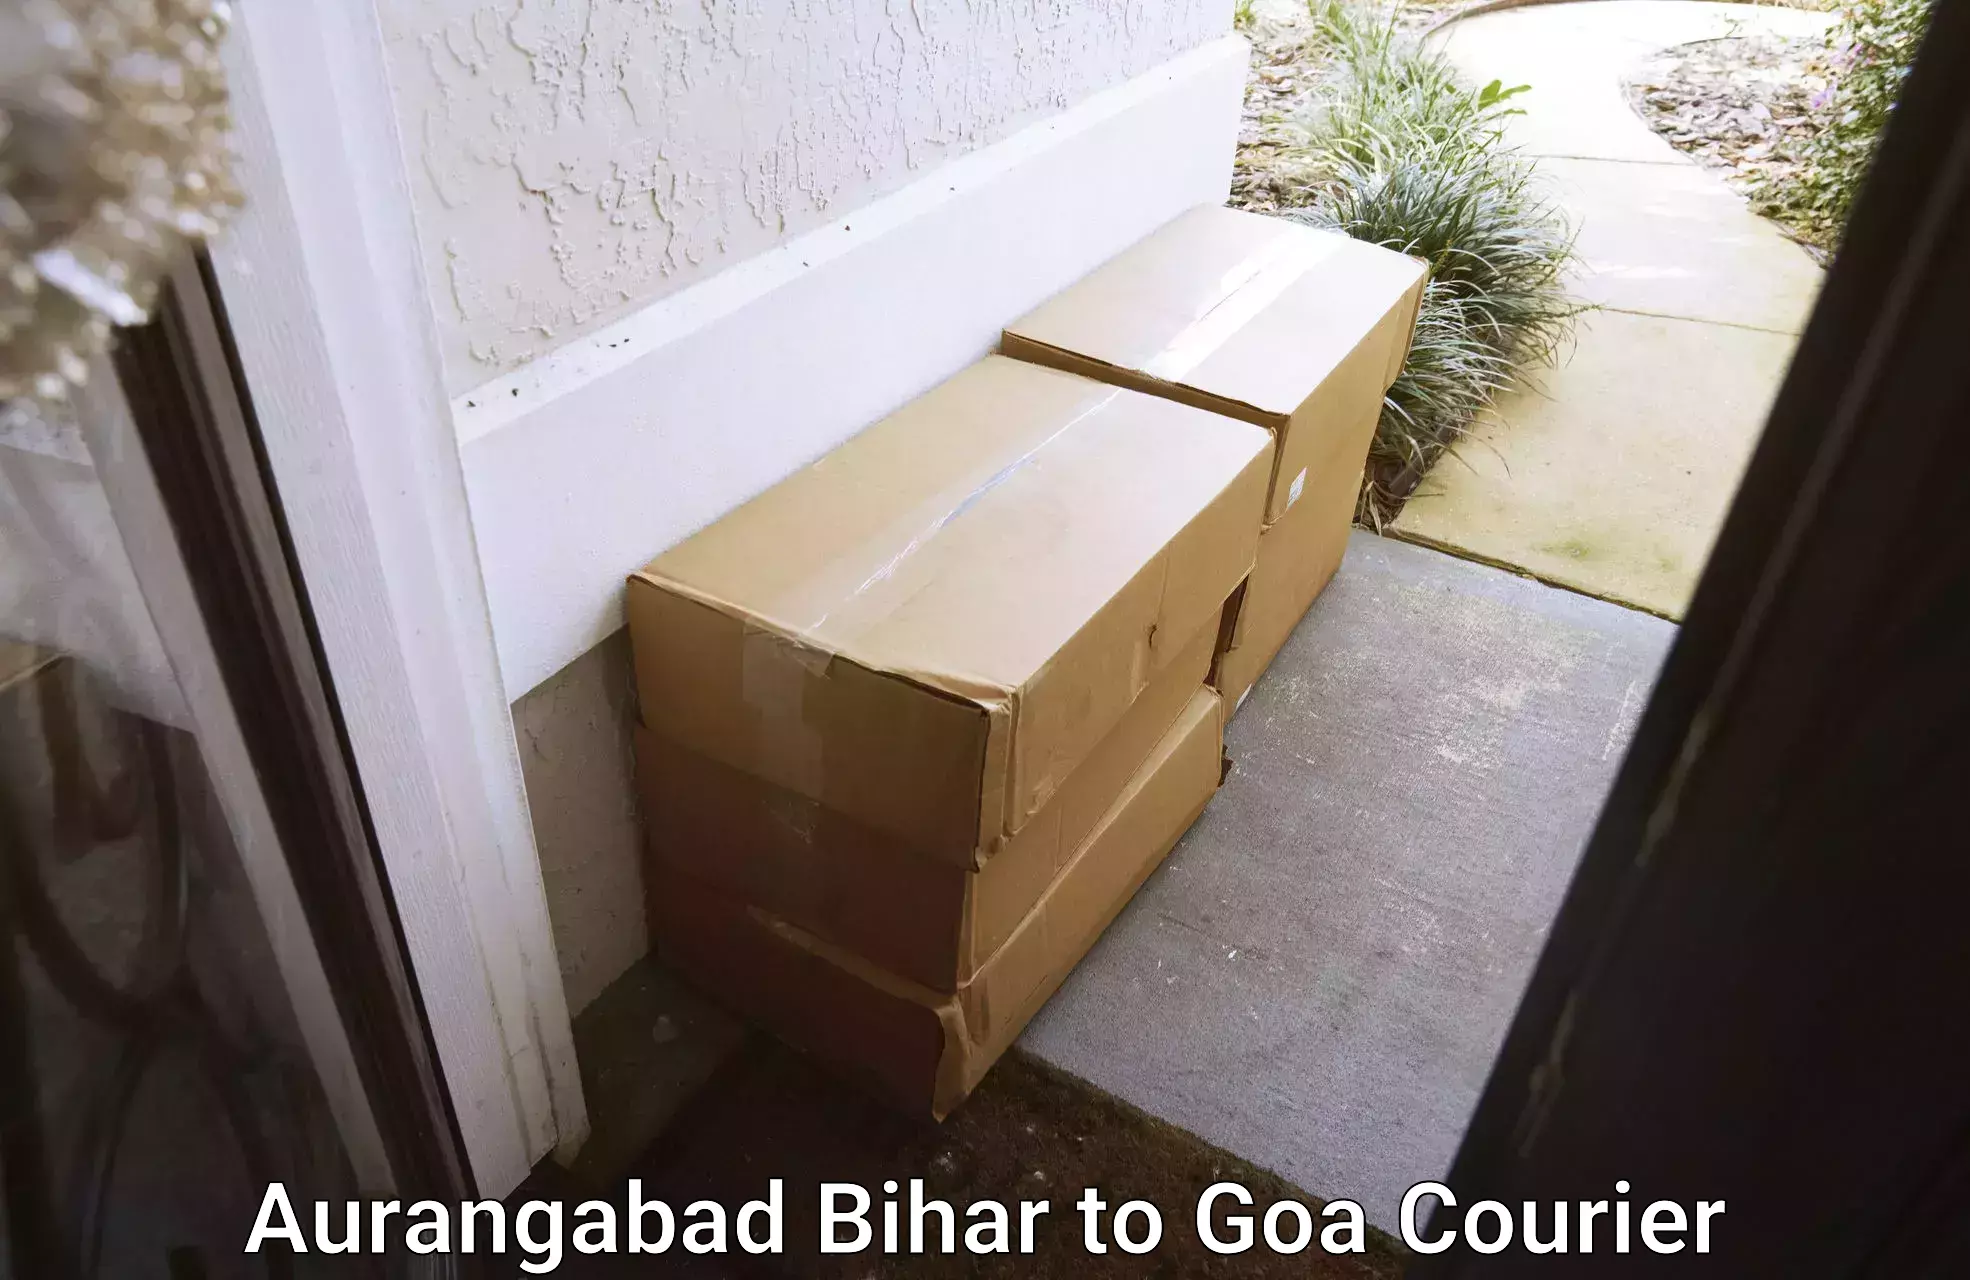 Efficient relocation services Aurangabad Bihar to IIT Goa